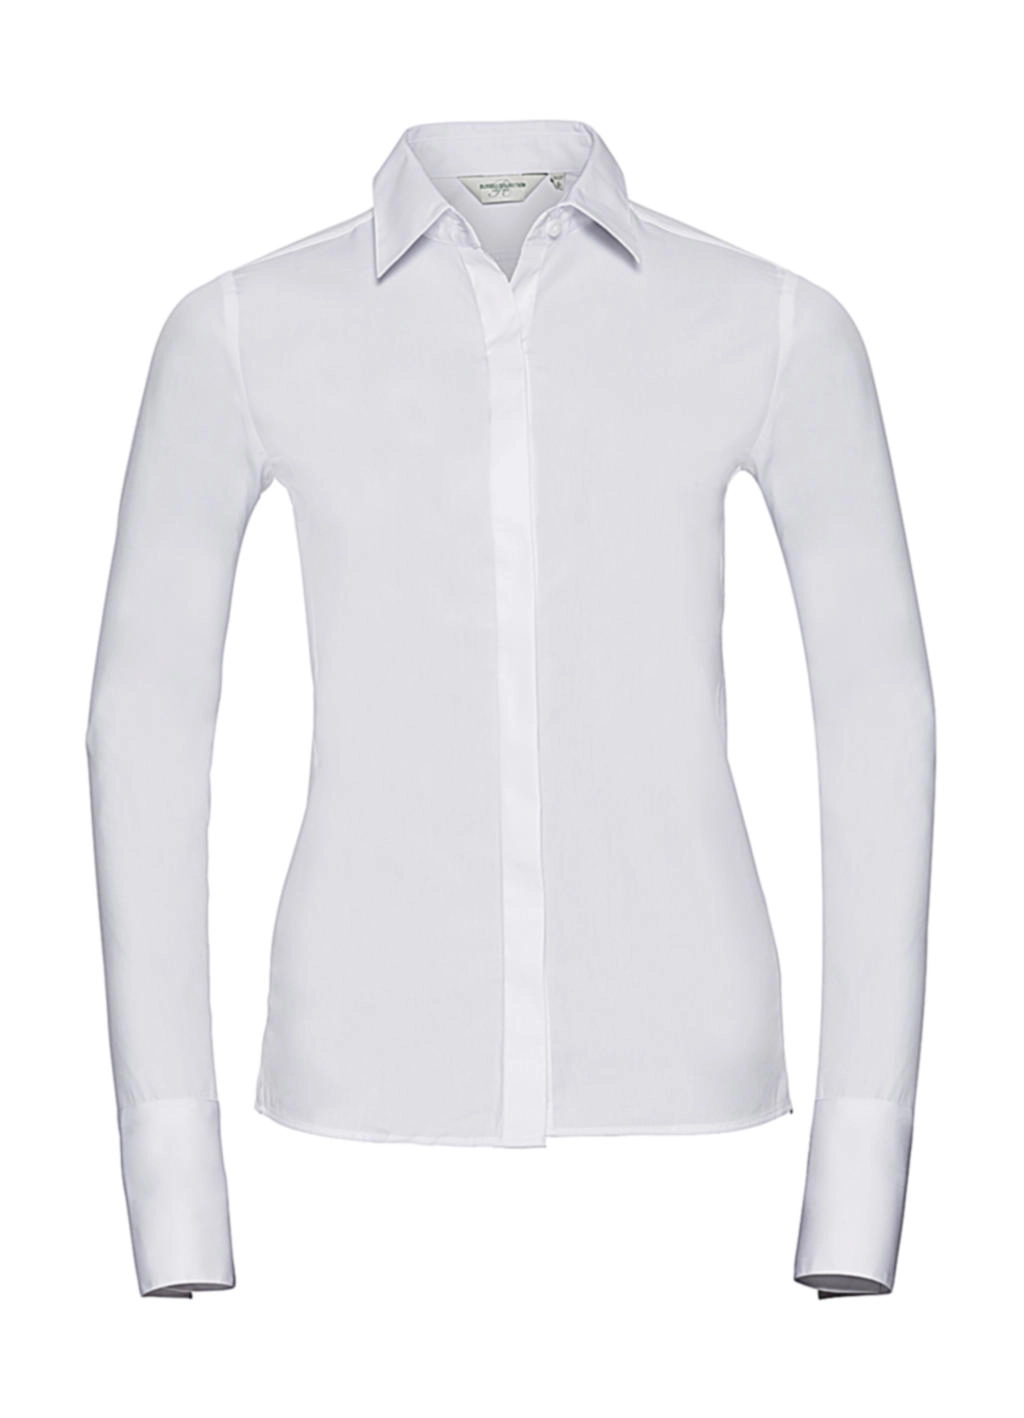 Ladies` LS Ultimate Stretch Shirt zum Besticken und Bedrucken in der Farbe White mit Ihren Logo, Schriftzug oder Motiv.